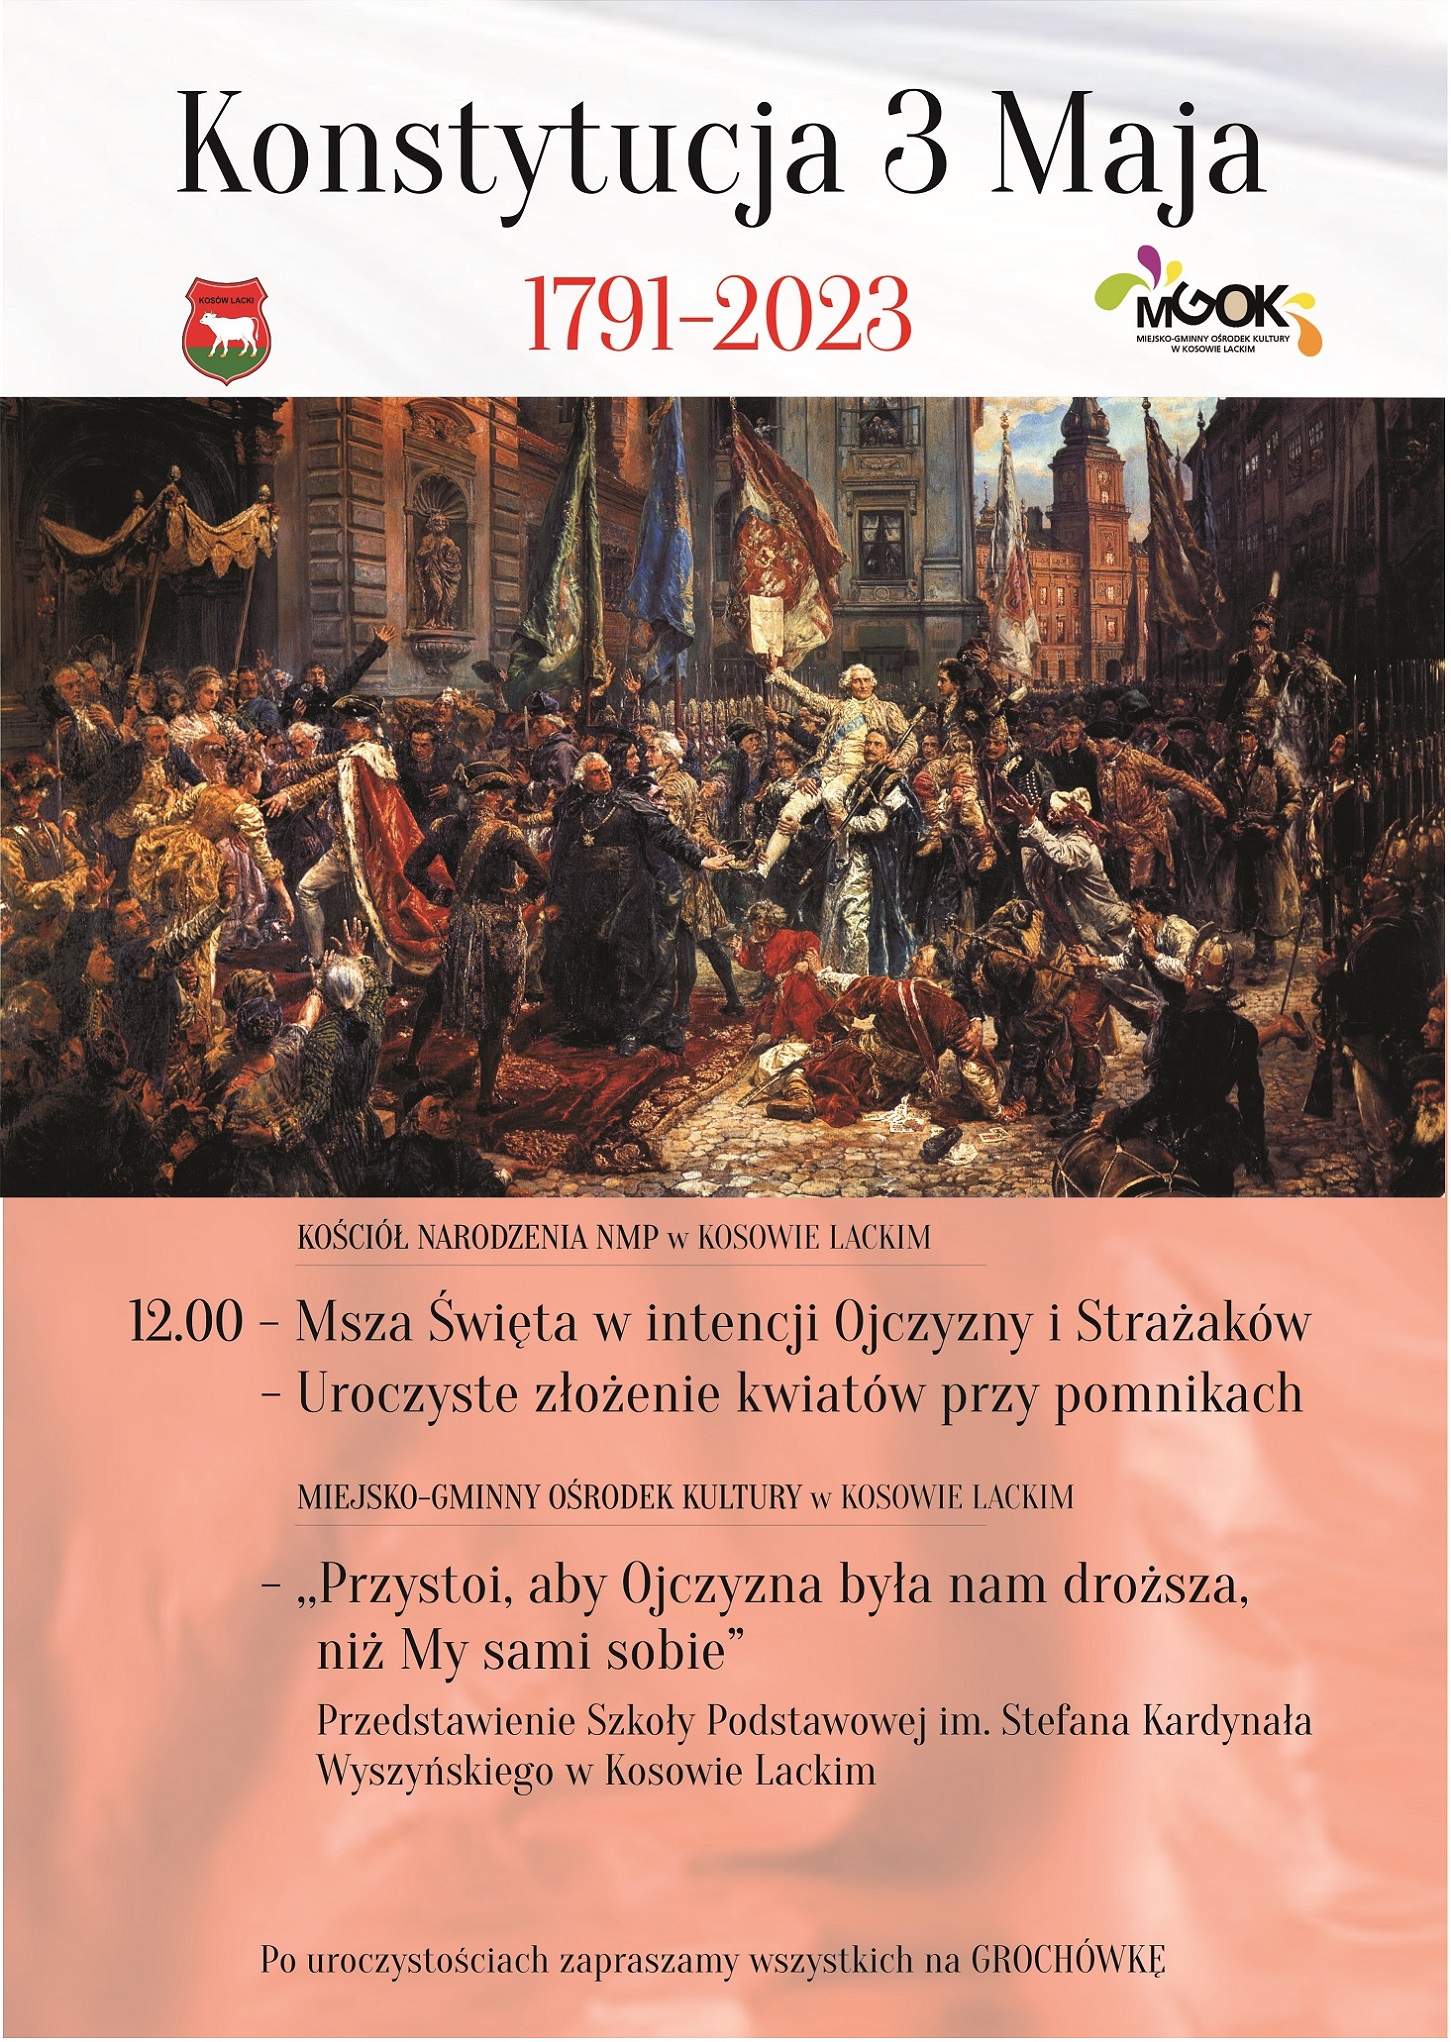 Obchody uchwalenia Konstutucji 3 Maja w Kosowie Lackim - plakat